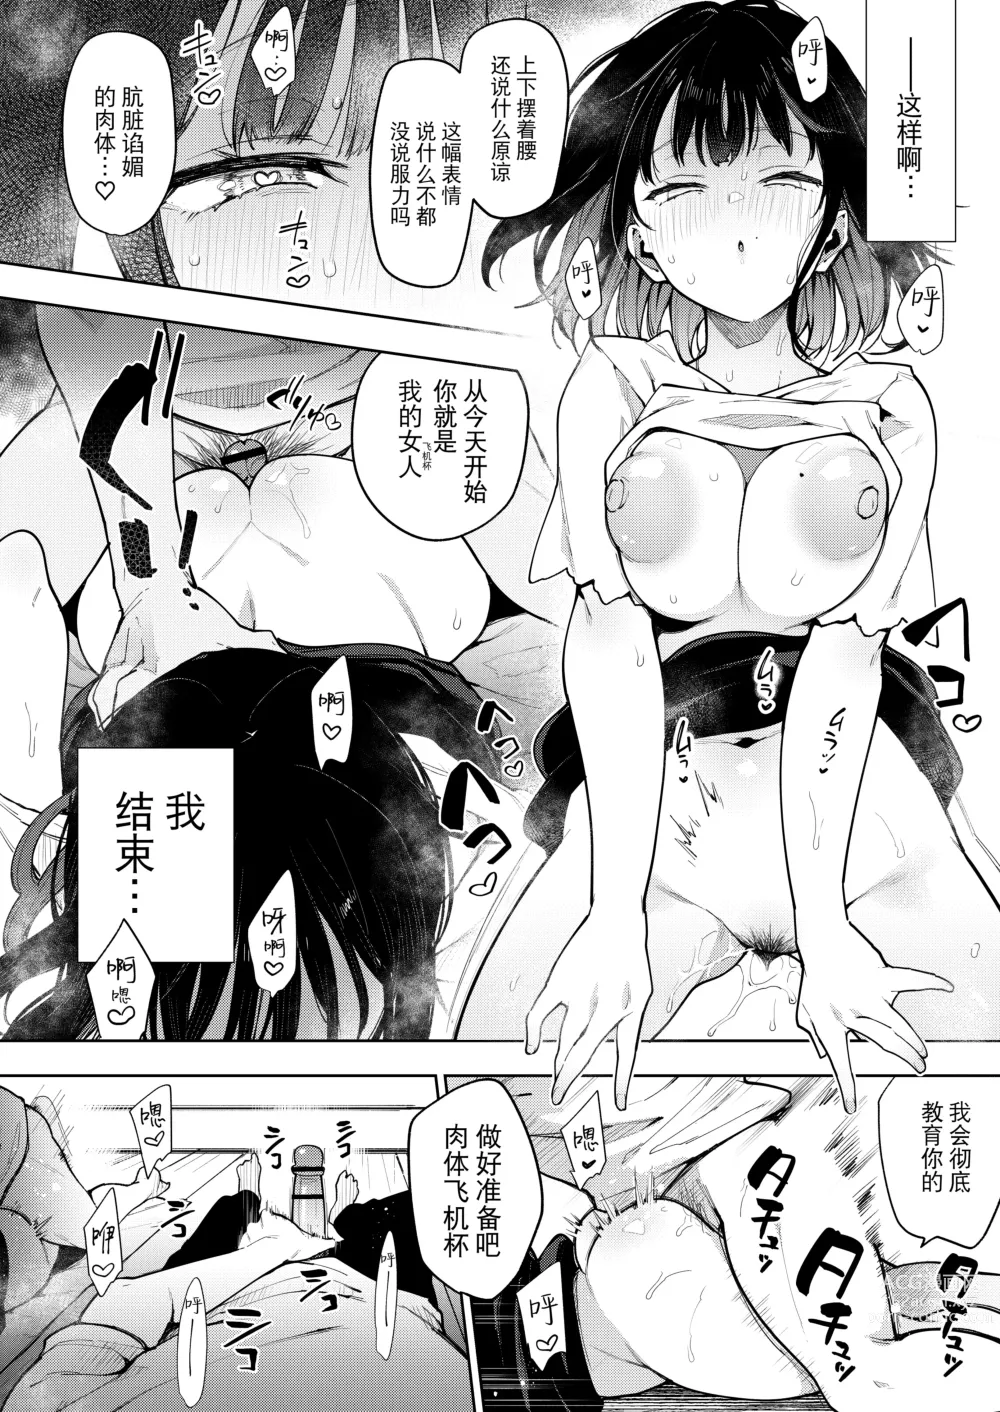 Page 176 of doujinshi Chouko I-V